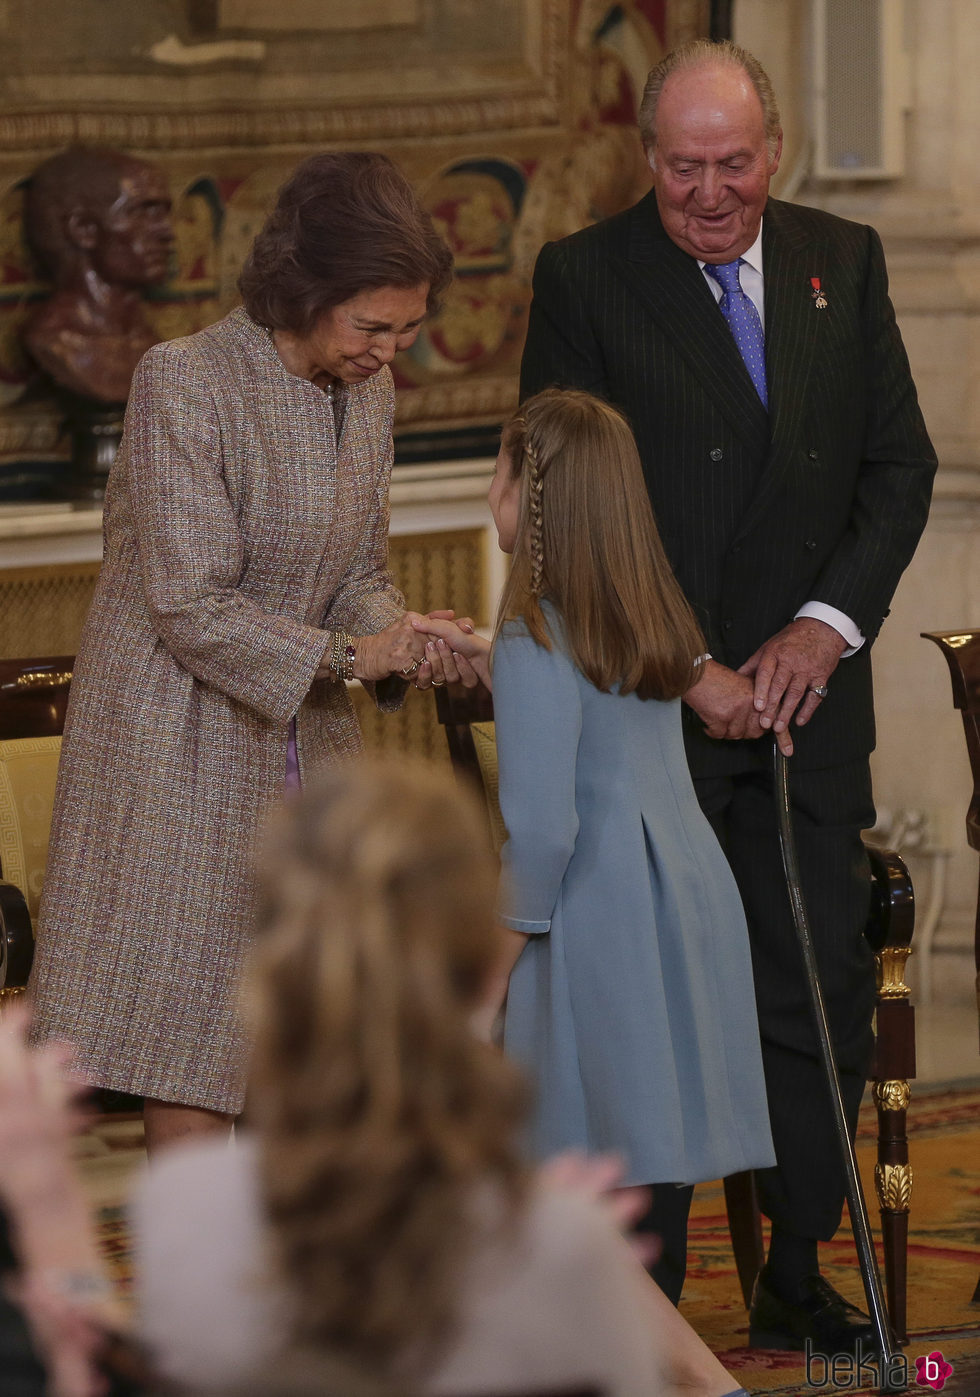 La Princesa Leonor con los Reyes Juan Carlos y Sofía tras recibir el Toisón de Oro